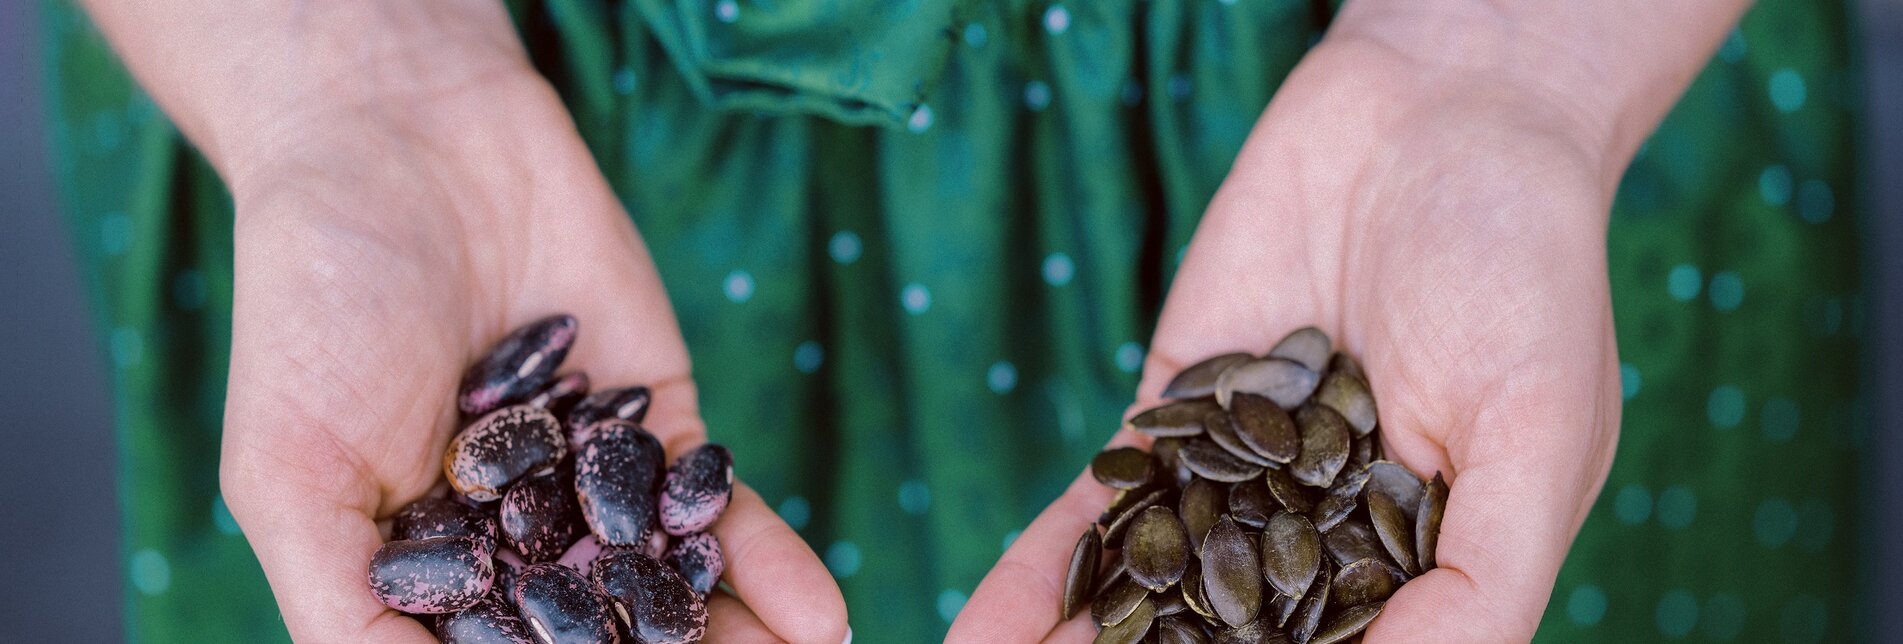 Beetle beans and pumpkin seeds held in hands | © TV Oststeiermark | diemosbachers